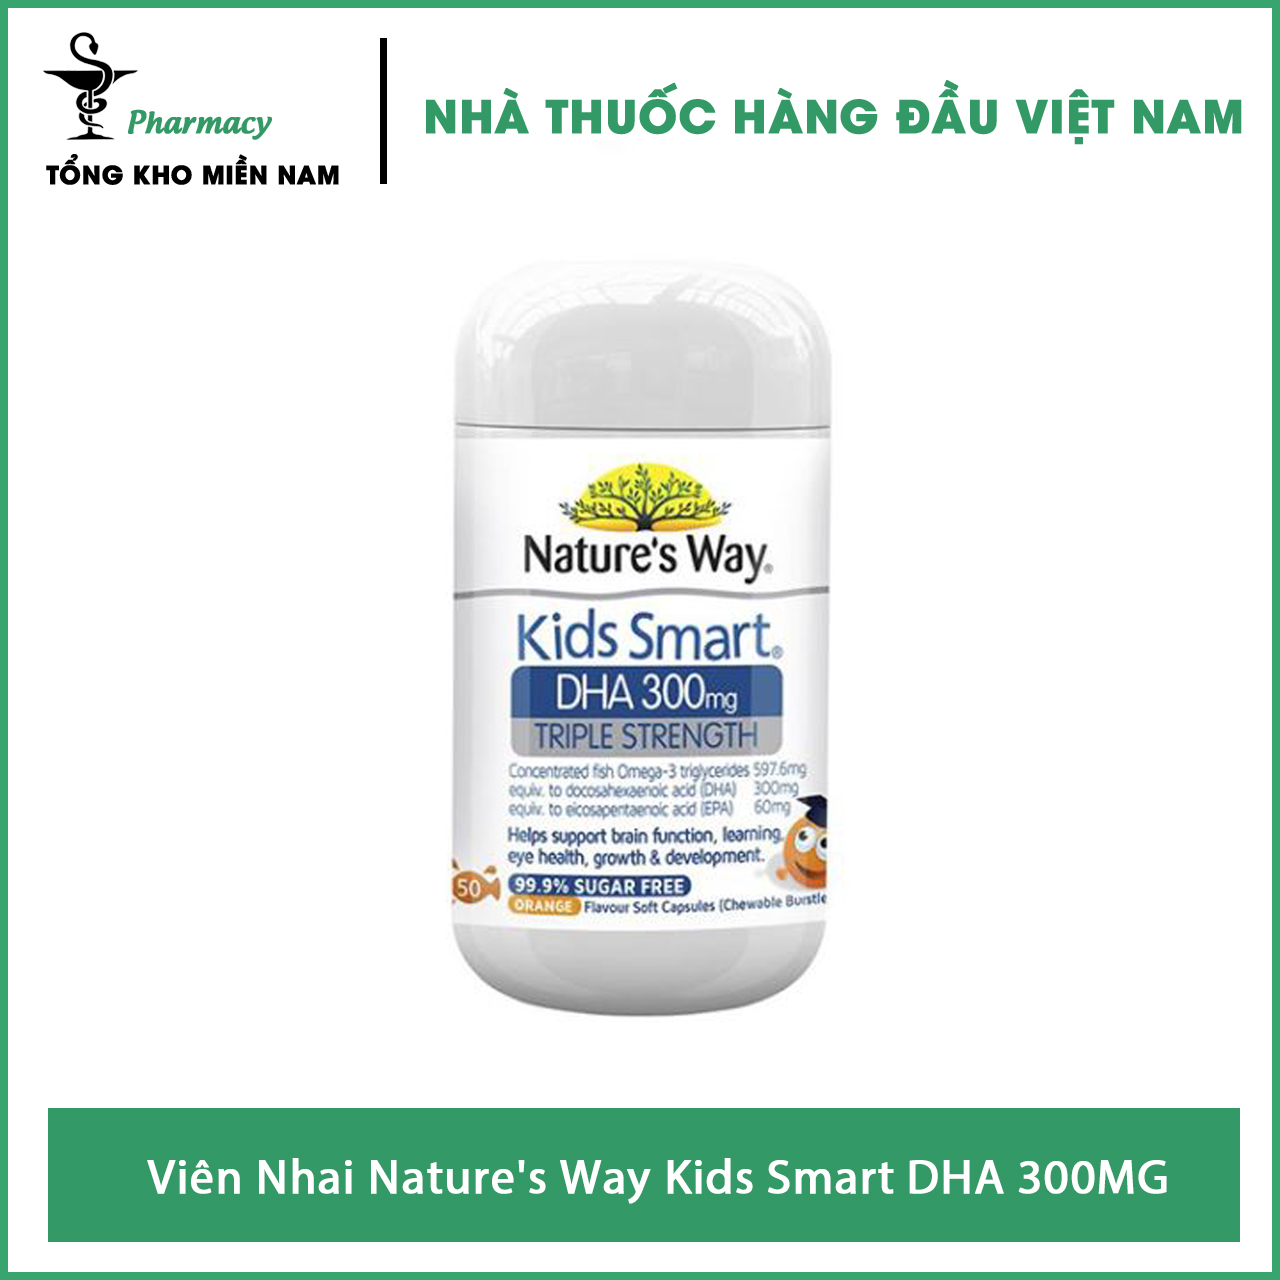 Viên Nhai Nature's Way Kids Smart DHA 300MG - Bổ Sung DHA Cho Bé – Chai 50 viên – Tổng Kho MiềnNam